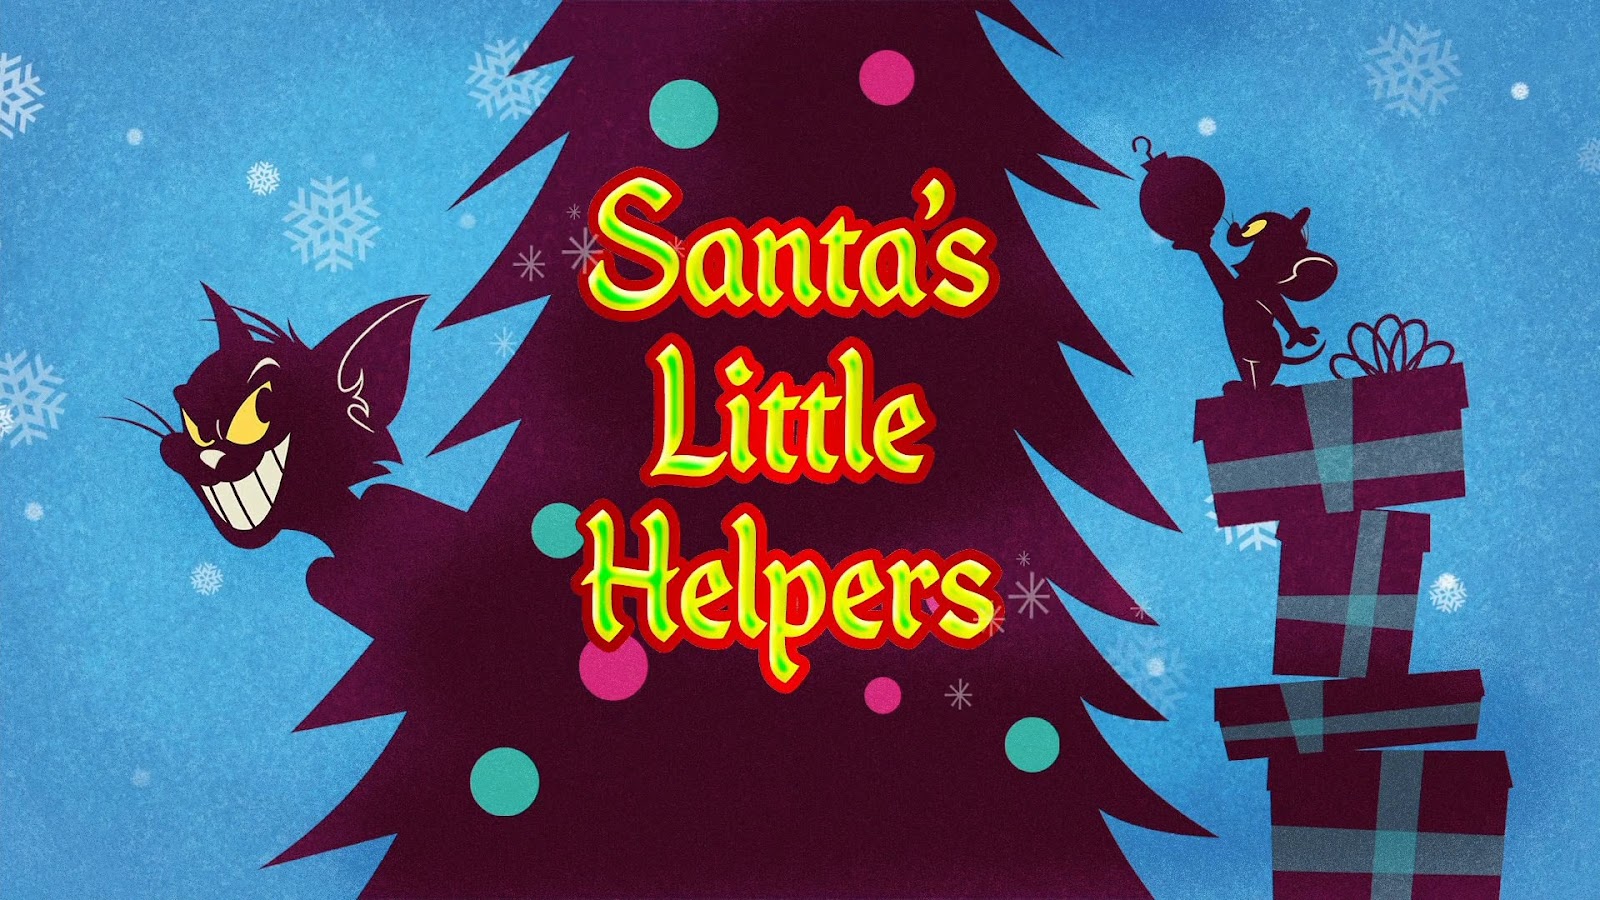 Tom y Jerry: Los ayudantes de Santa (2014) 1080p WEB-DL Latino